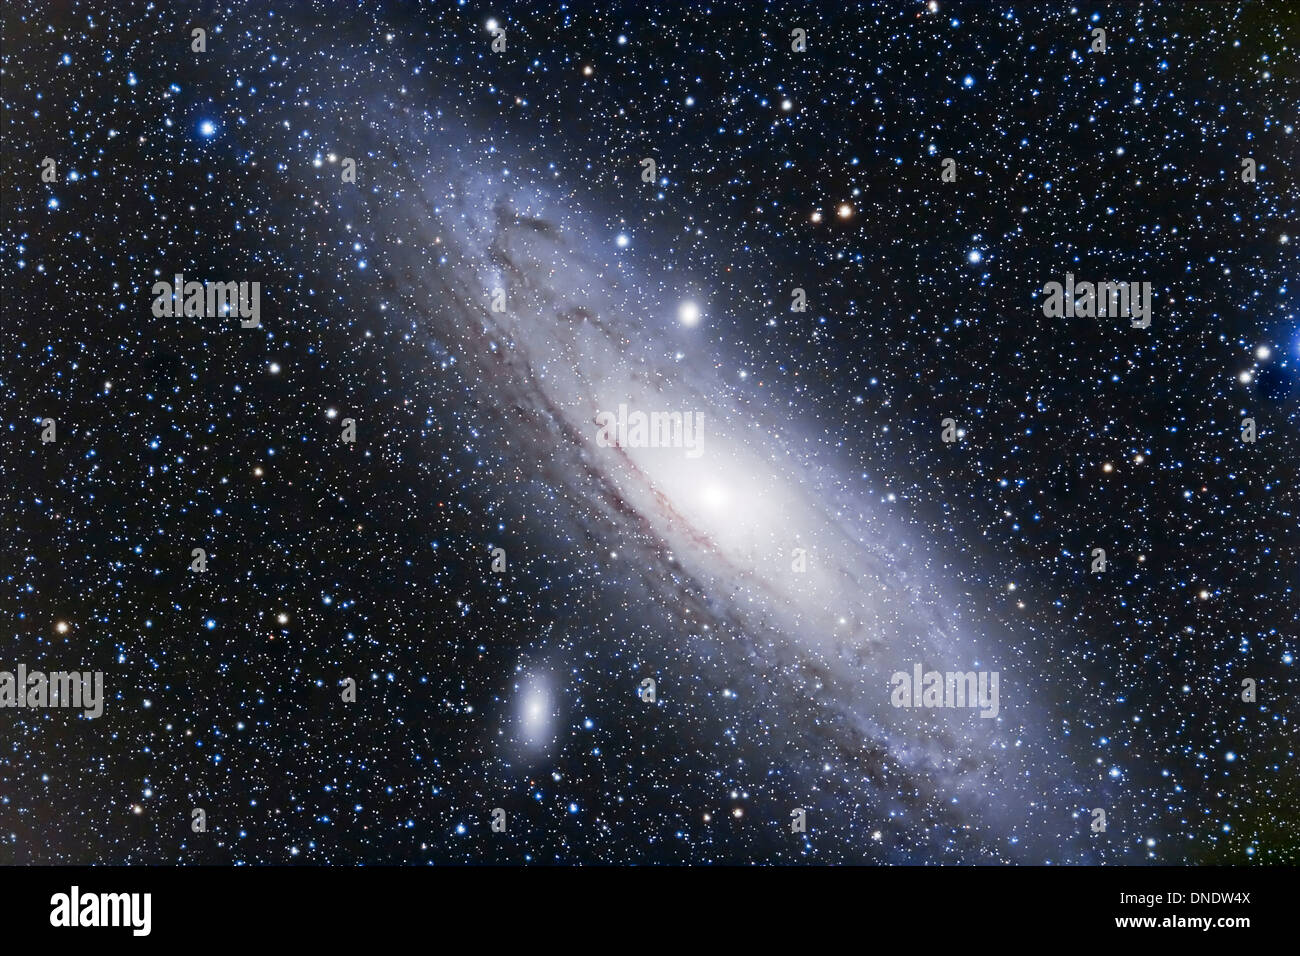 La galaxia Andrómeda, una galaxia espiral en la Constelación de Andrómeda. Foto de stock